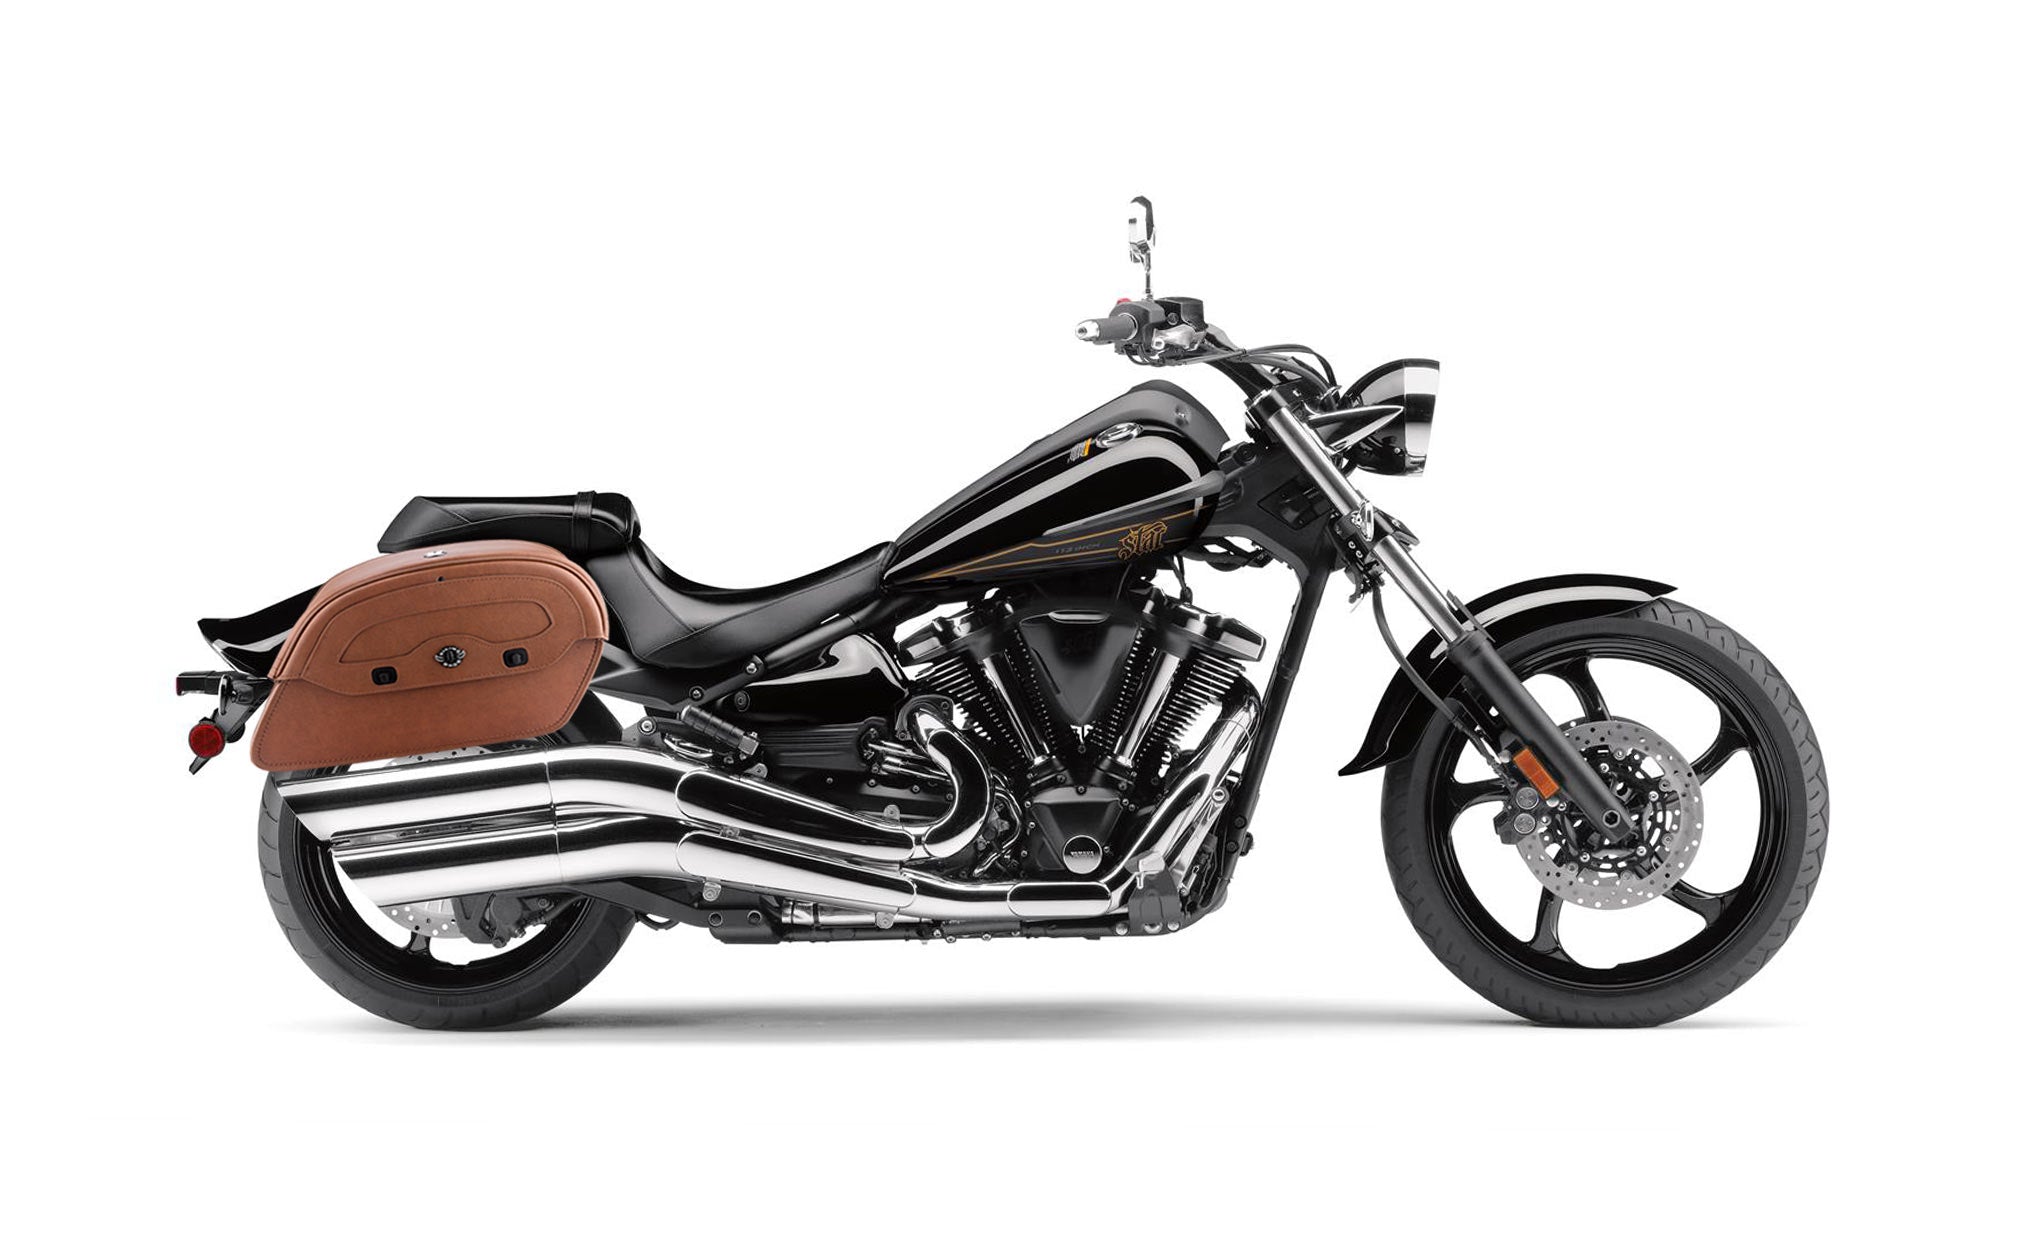 Viking Warrior Brown Large Yamaha Raider Leather Motorcycle Saddlebags on Bike Photo @expand